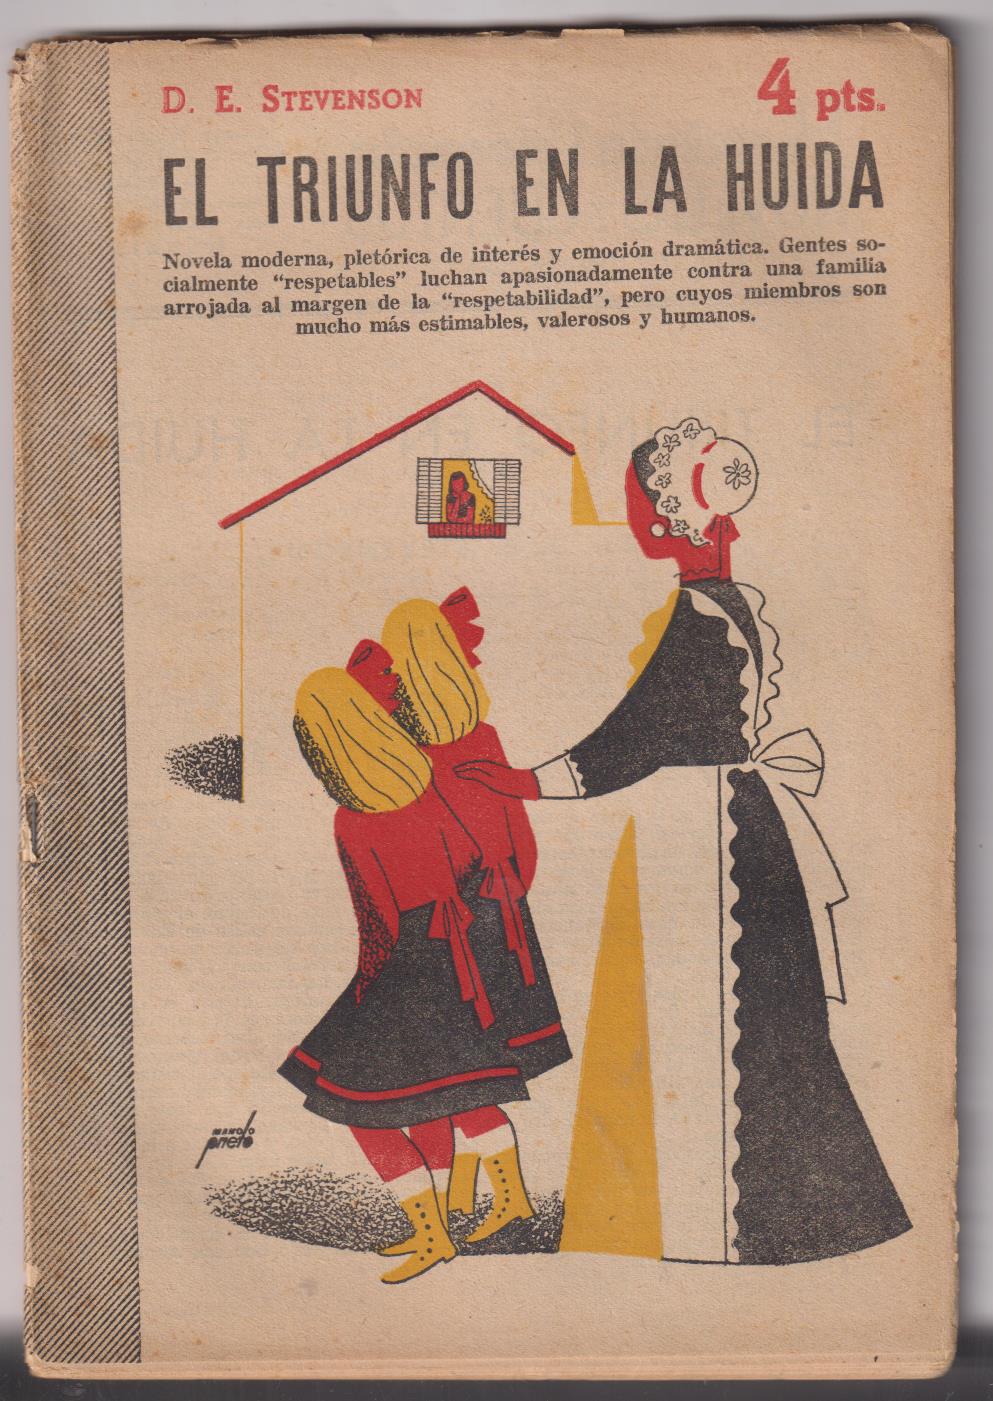 Revista literaria Novelas y Cuentos nº 1159. D. E. Stevenson. El Triunfo en la huida, año 1953